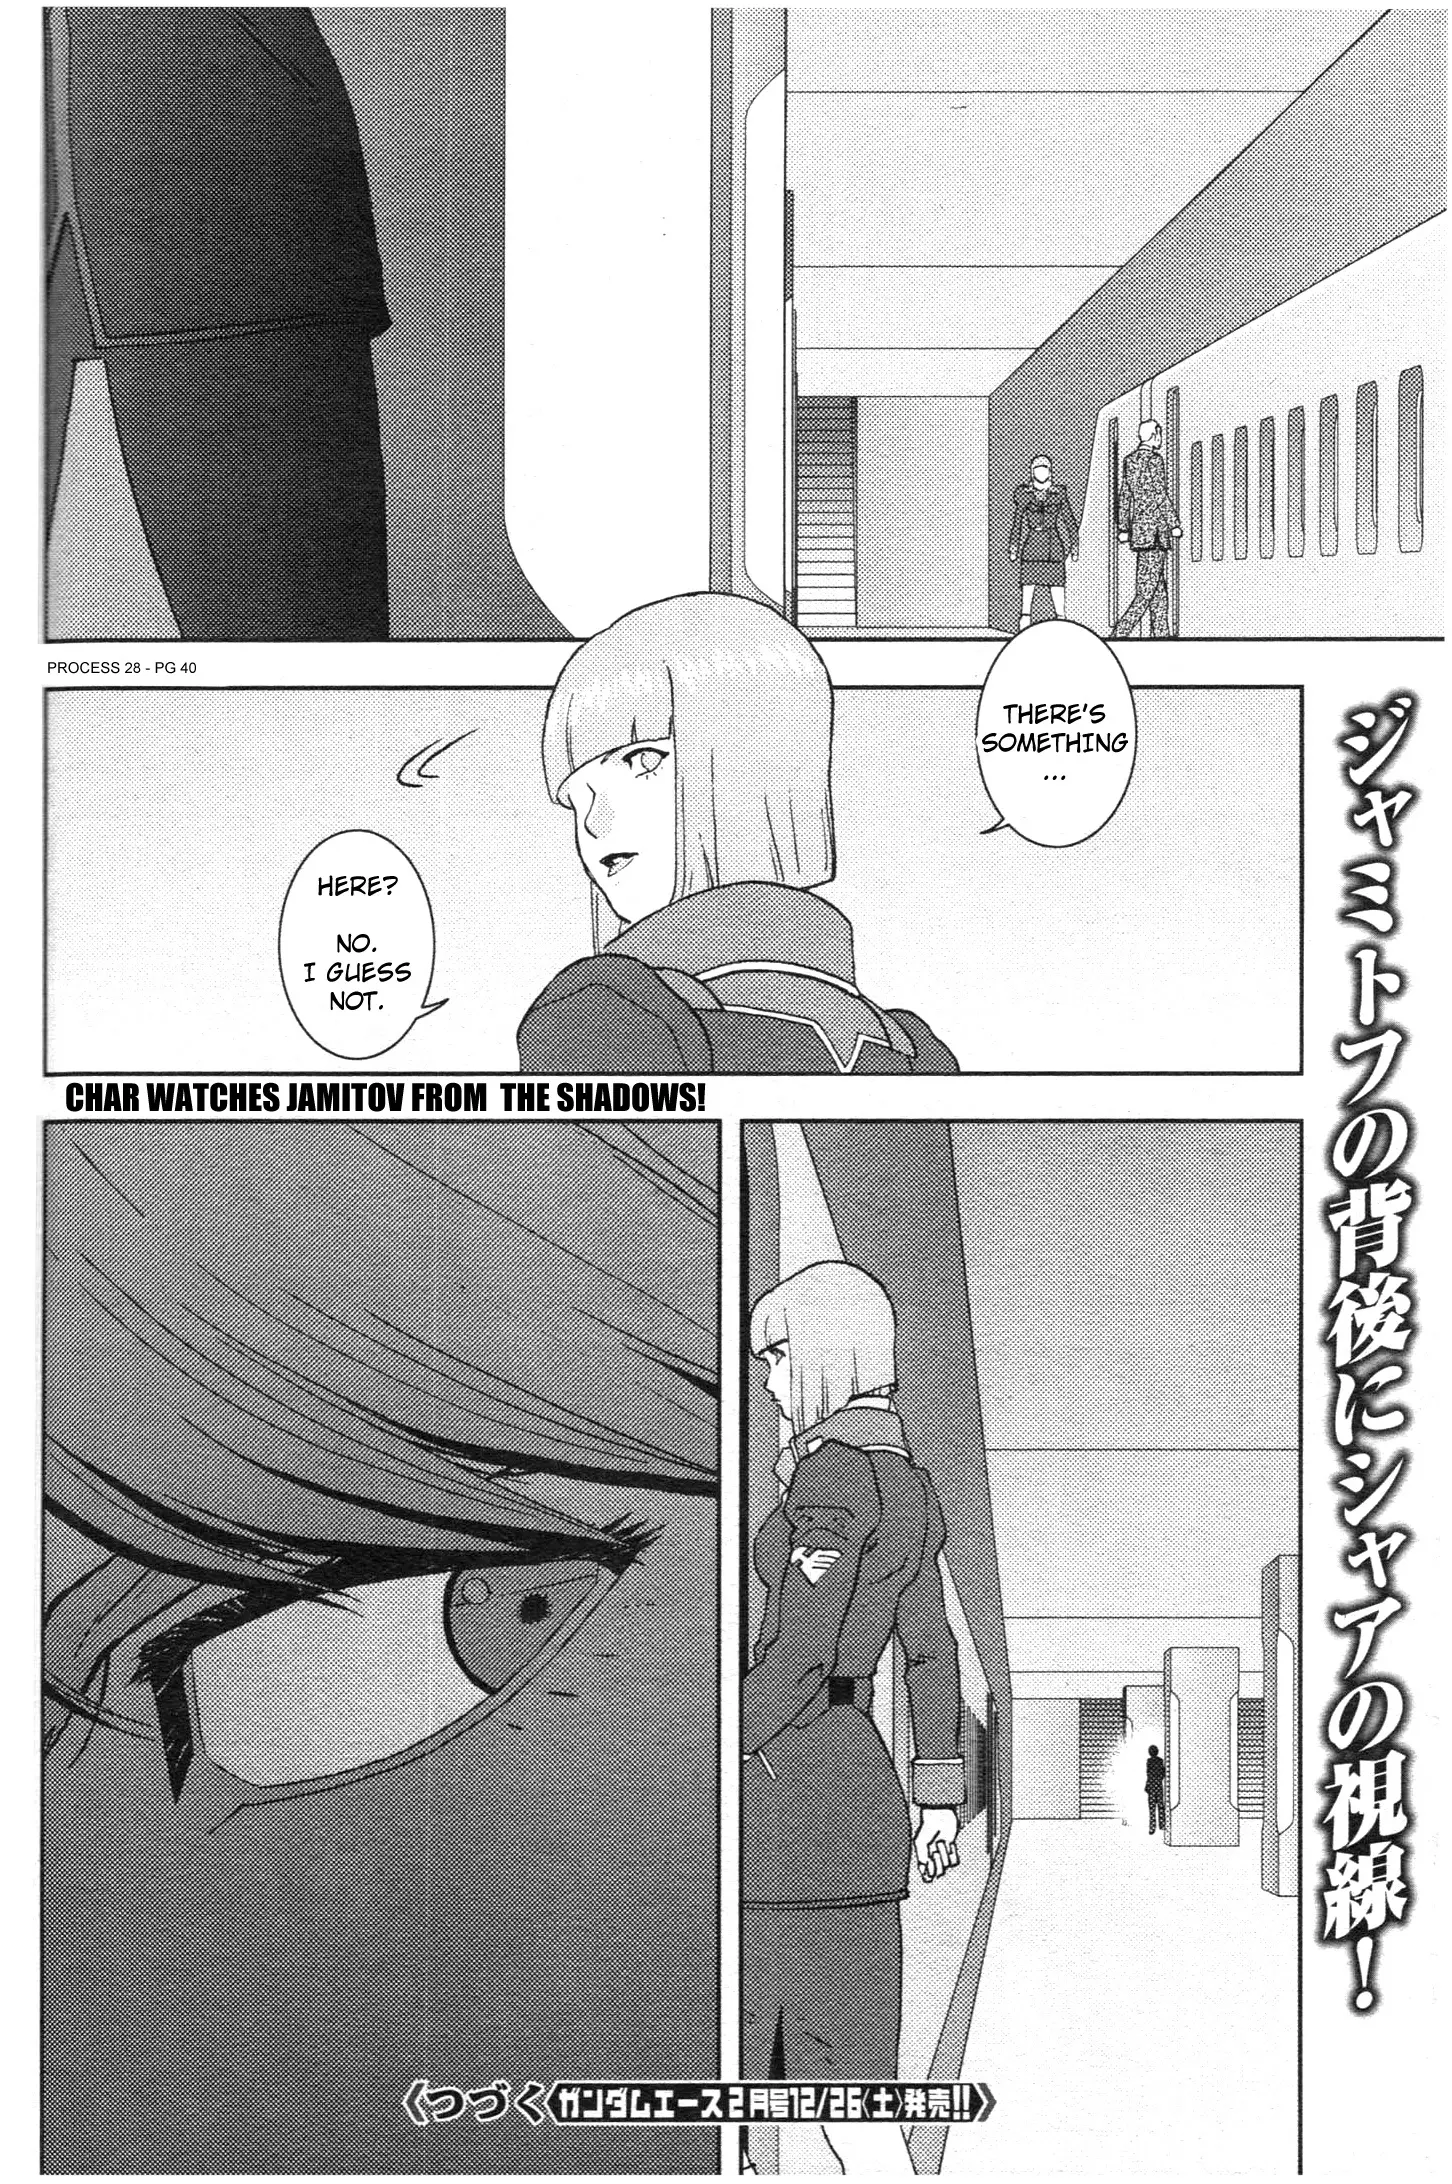 Mobile Suit Zeta Gundam - Define - 77 page 40-756a18ce